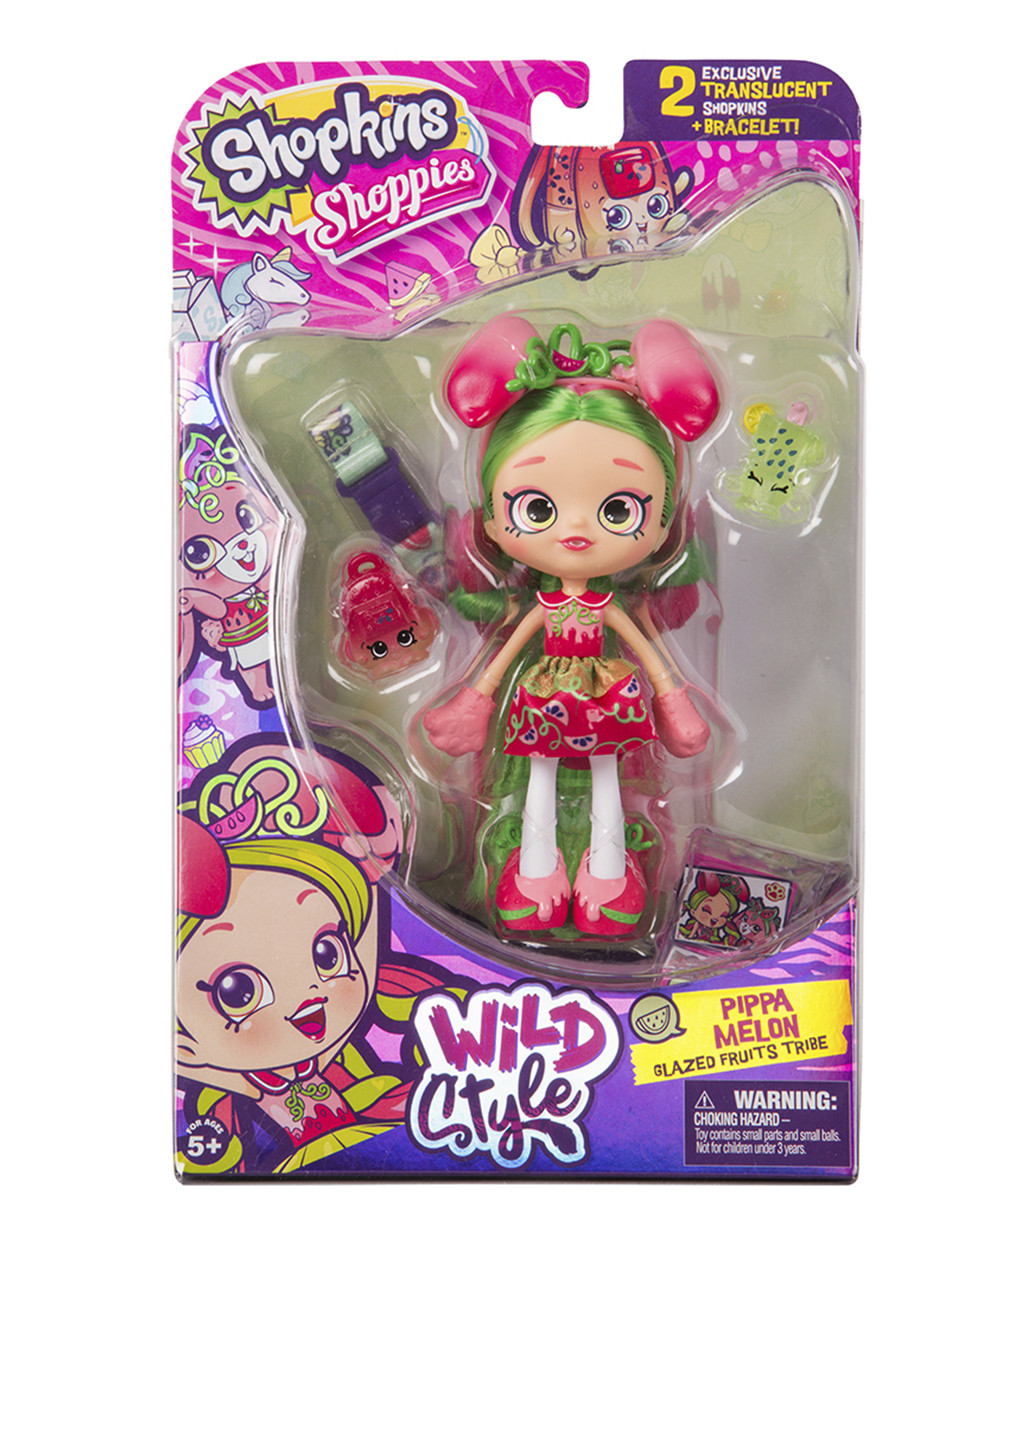 Кукла shopkins s9 серии "wild style" - фруктовая леди (с аксессуарами) Shoppies (163192591)